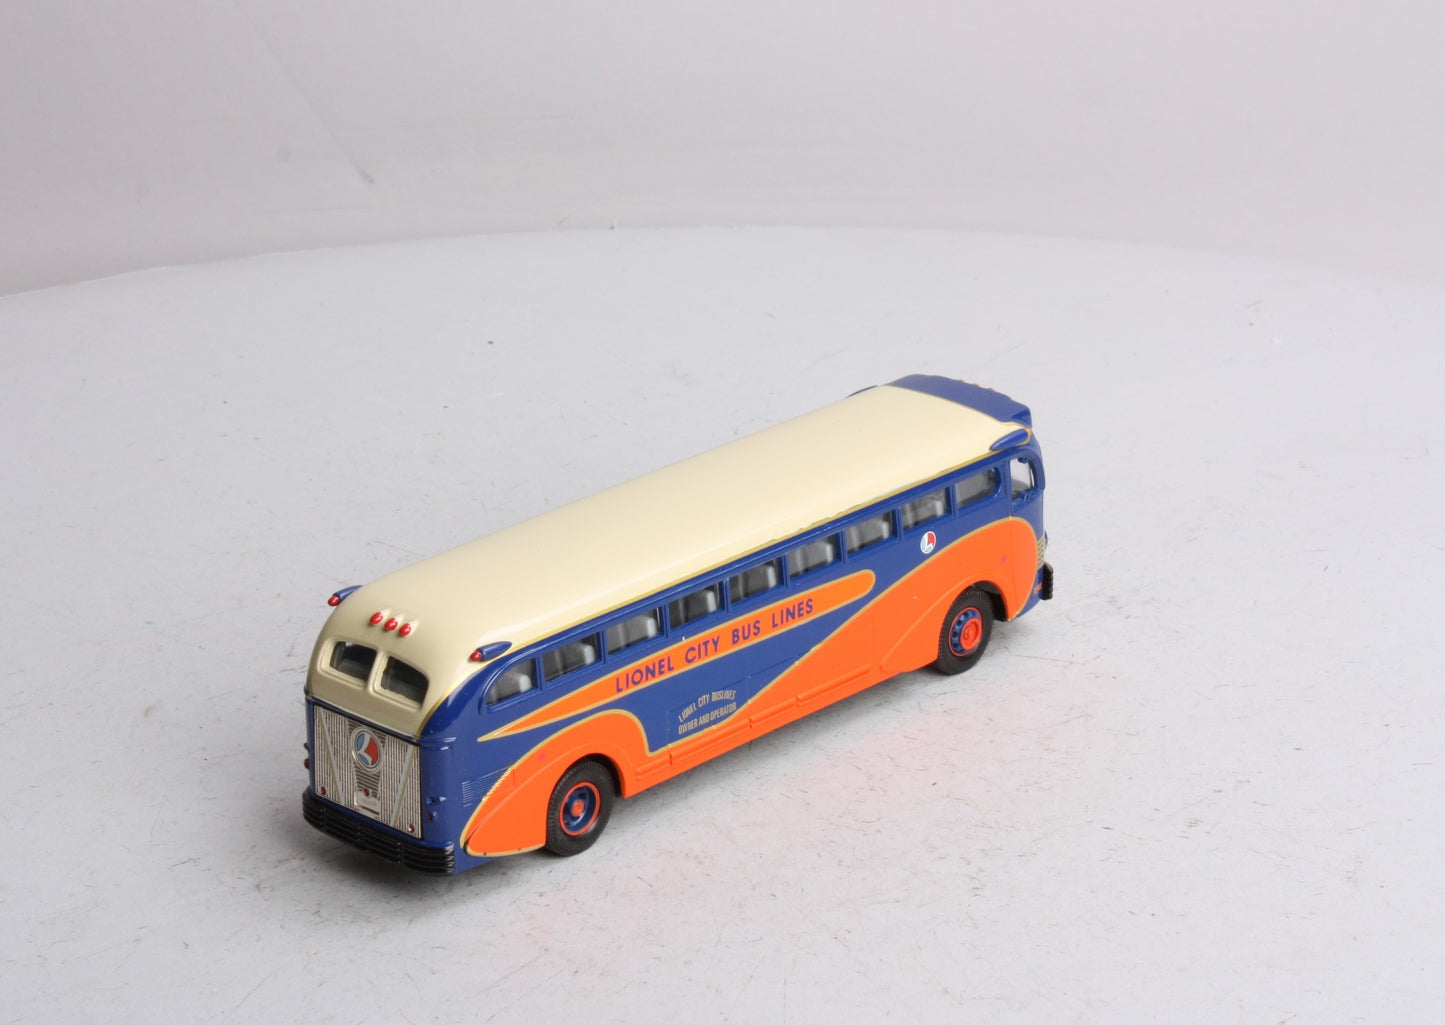 Corgi 53904 1:50 Scale Lionel Classics City Bus Lines Coach Bus LN/Box